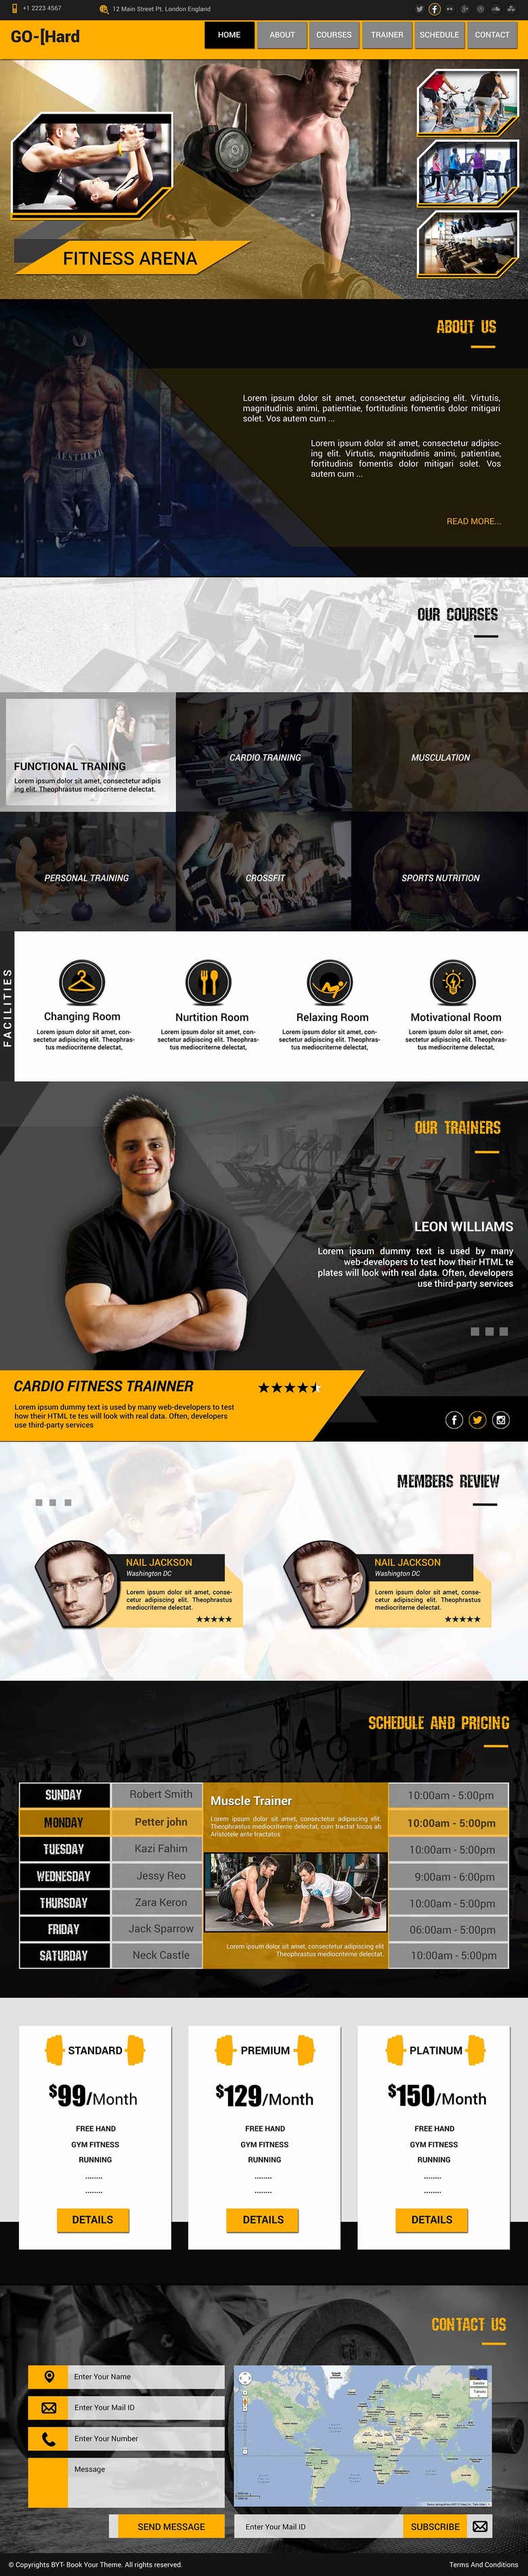 Landing Page : Gym